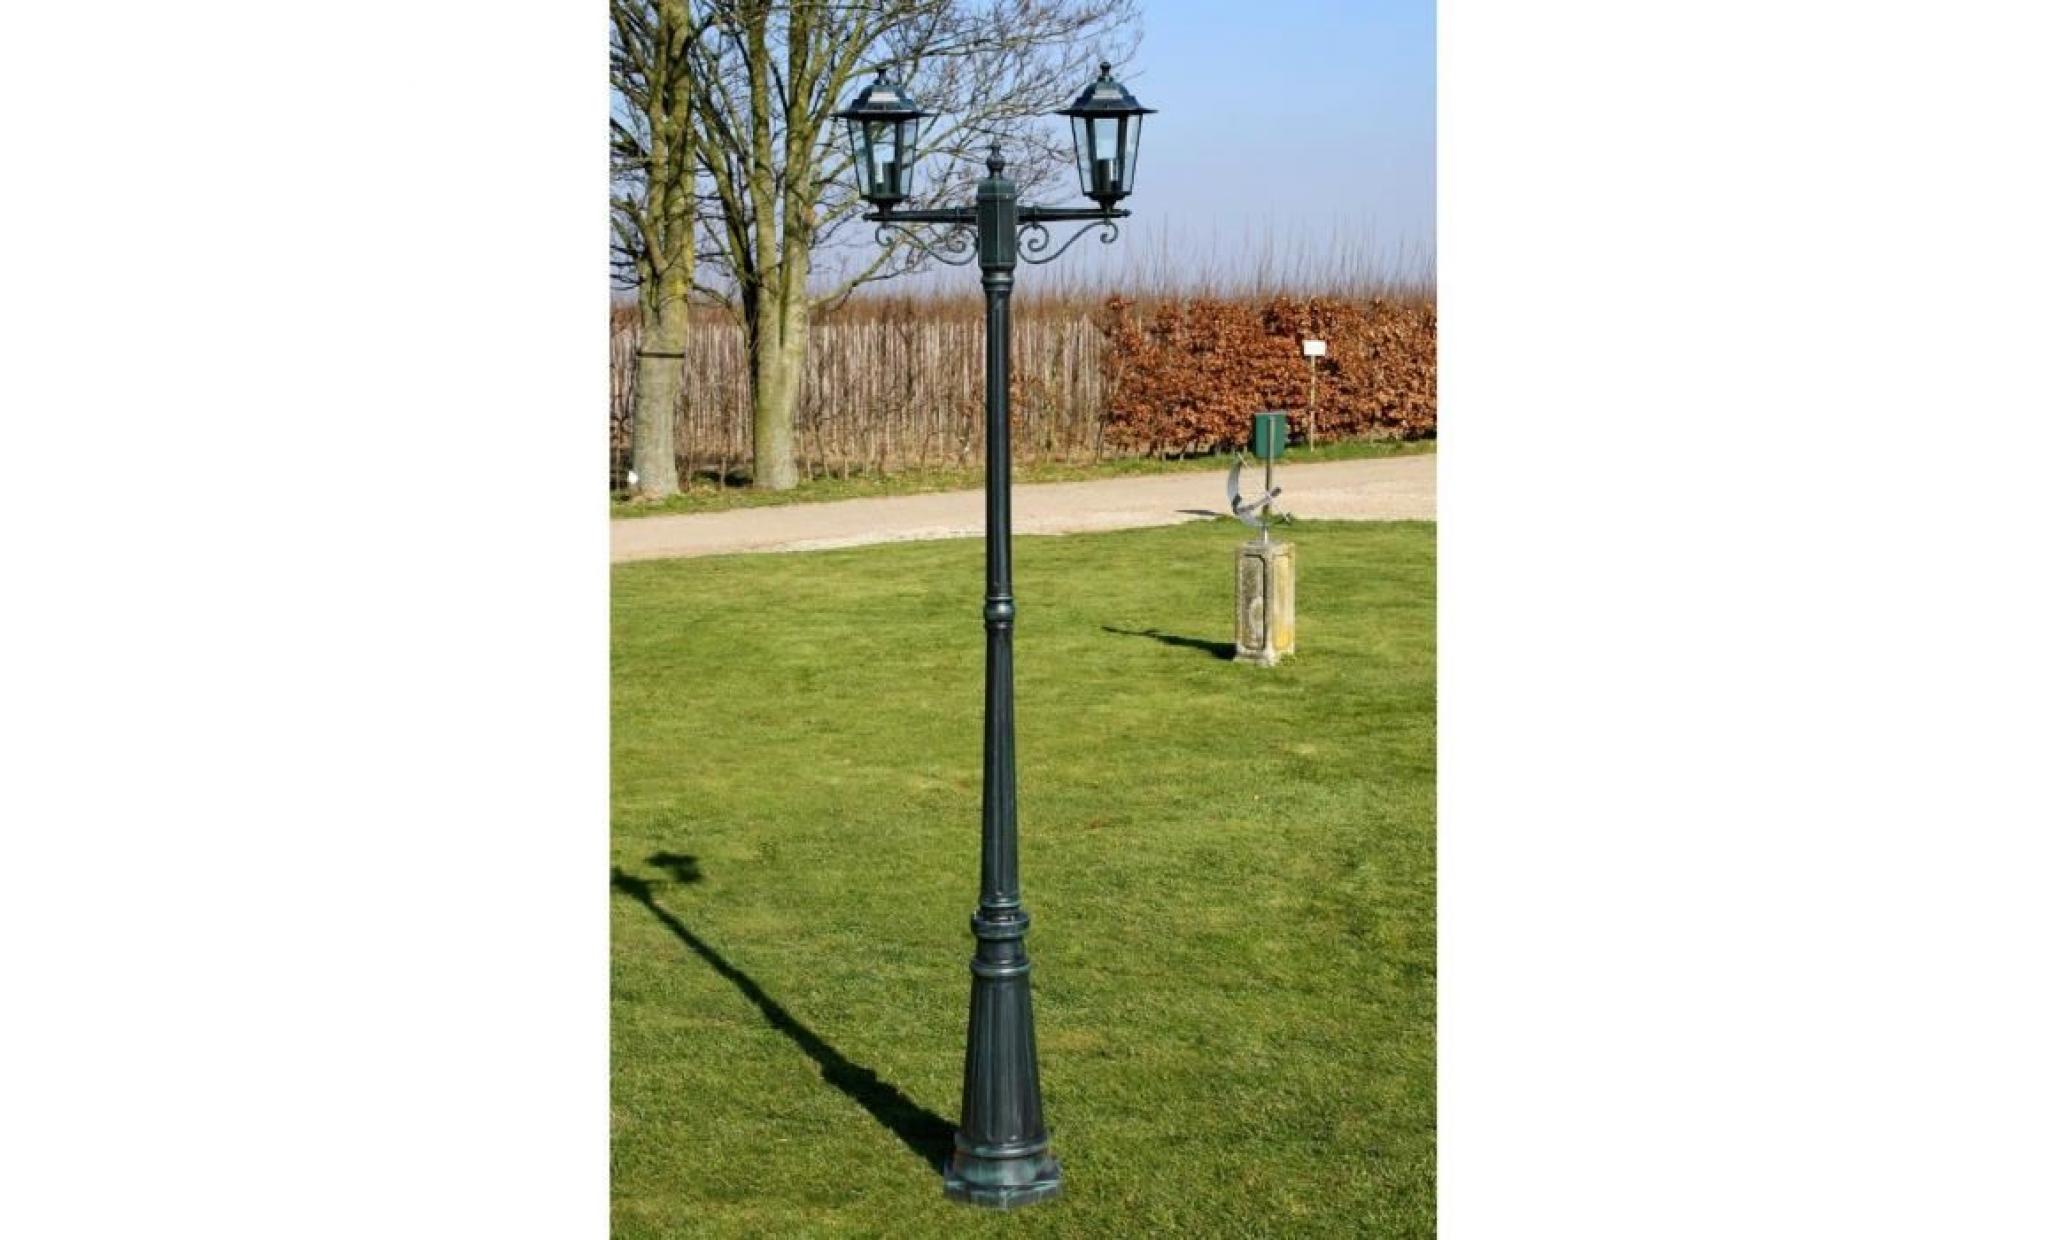 r122 ce lampadaire de 215 cm a 2 lampes est adapte a l'eclairage du jardin ou d'une allee de jardin.